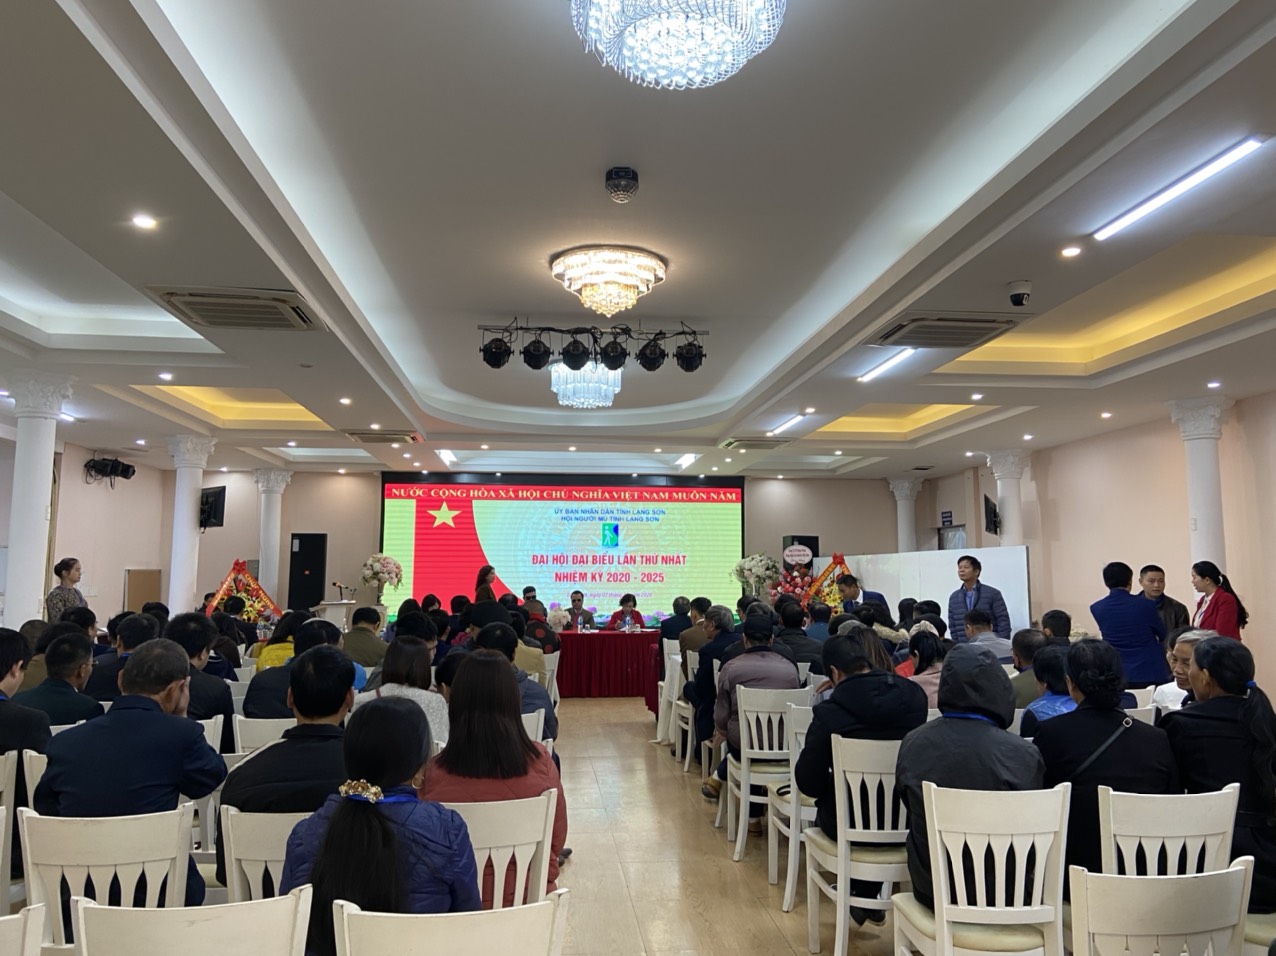 Hội người mù tỉnh Lạng Sơn tổ chức Đại hội lần thứ nhất, nhiệm kỳ 2020 - 2025